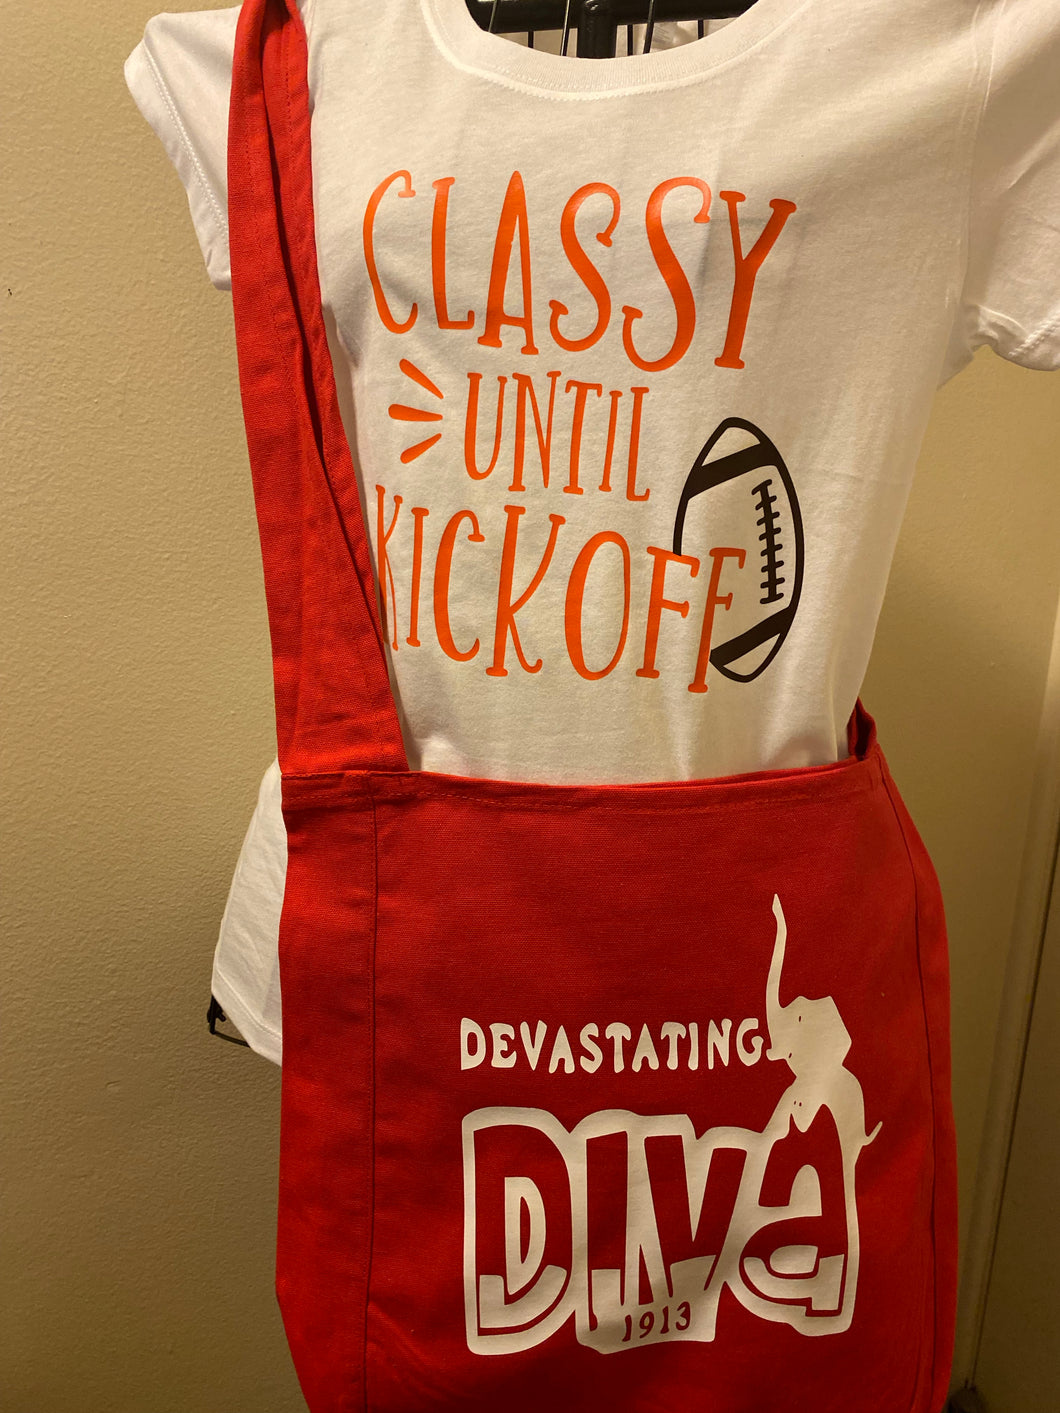 Devastating Diva